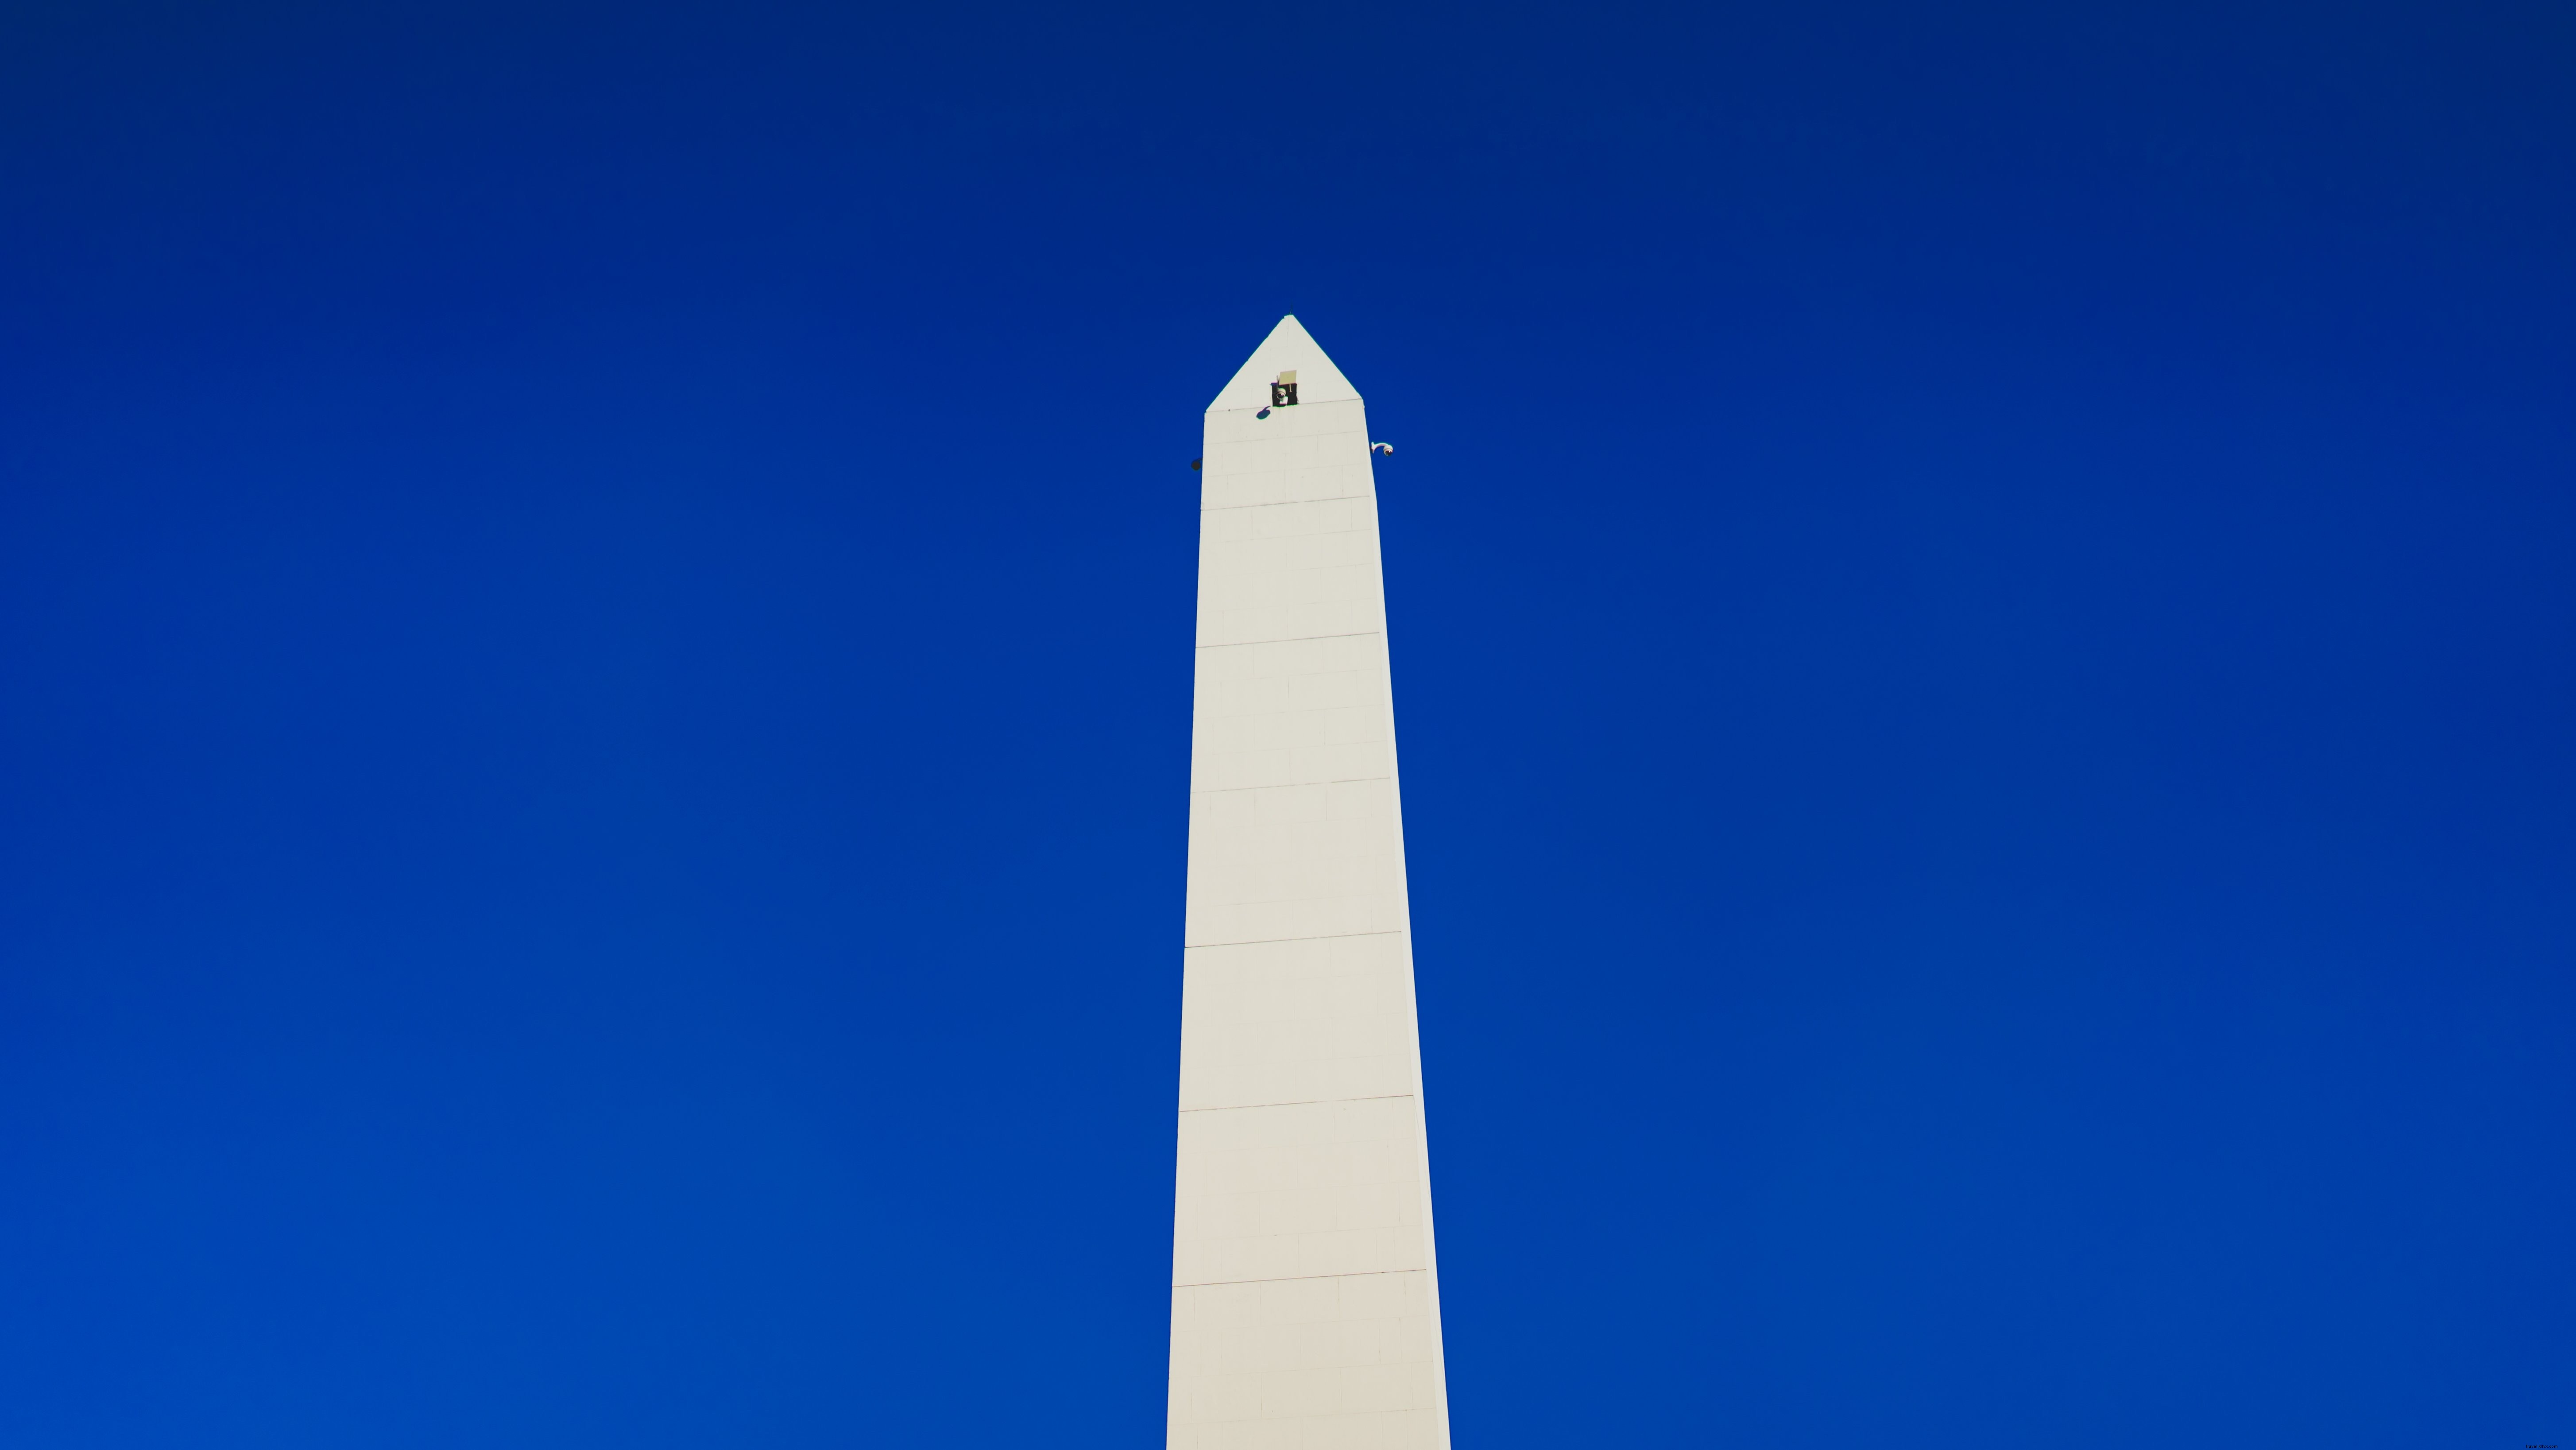 Foto del pico del monumento del obelisco